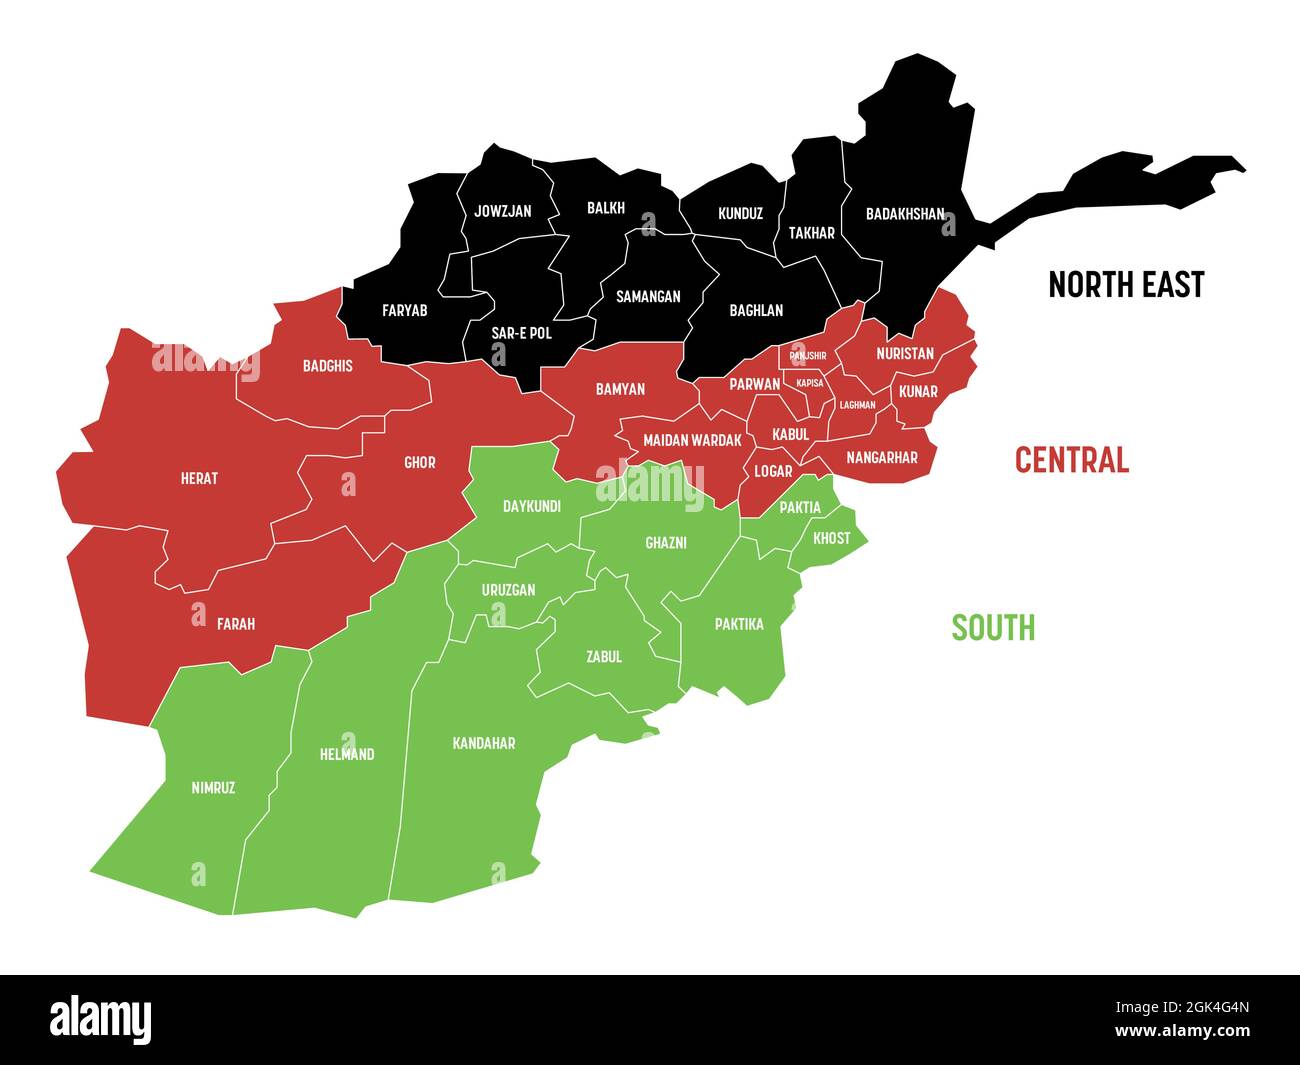 Politische Landkarte Afghanistans in Nationalflaggenfarben. Verwaltungsprovinzen in 3 Regionen unterteilt. Einfache flache Vektorkarte mit Beschriftungen. Stock Vektor